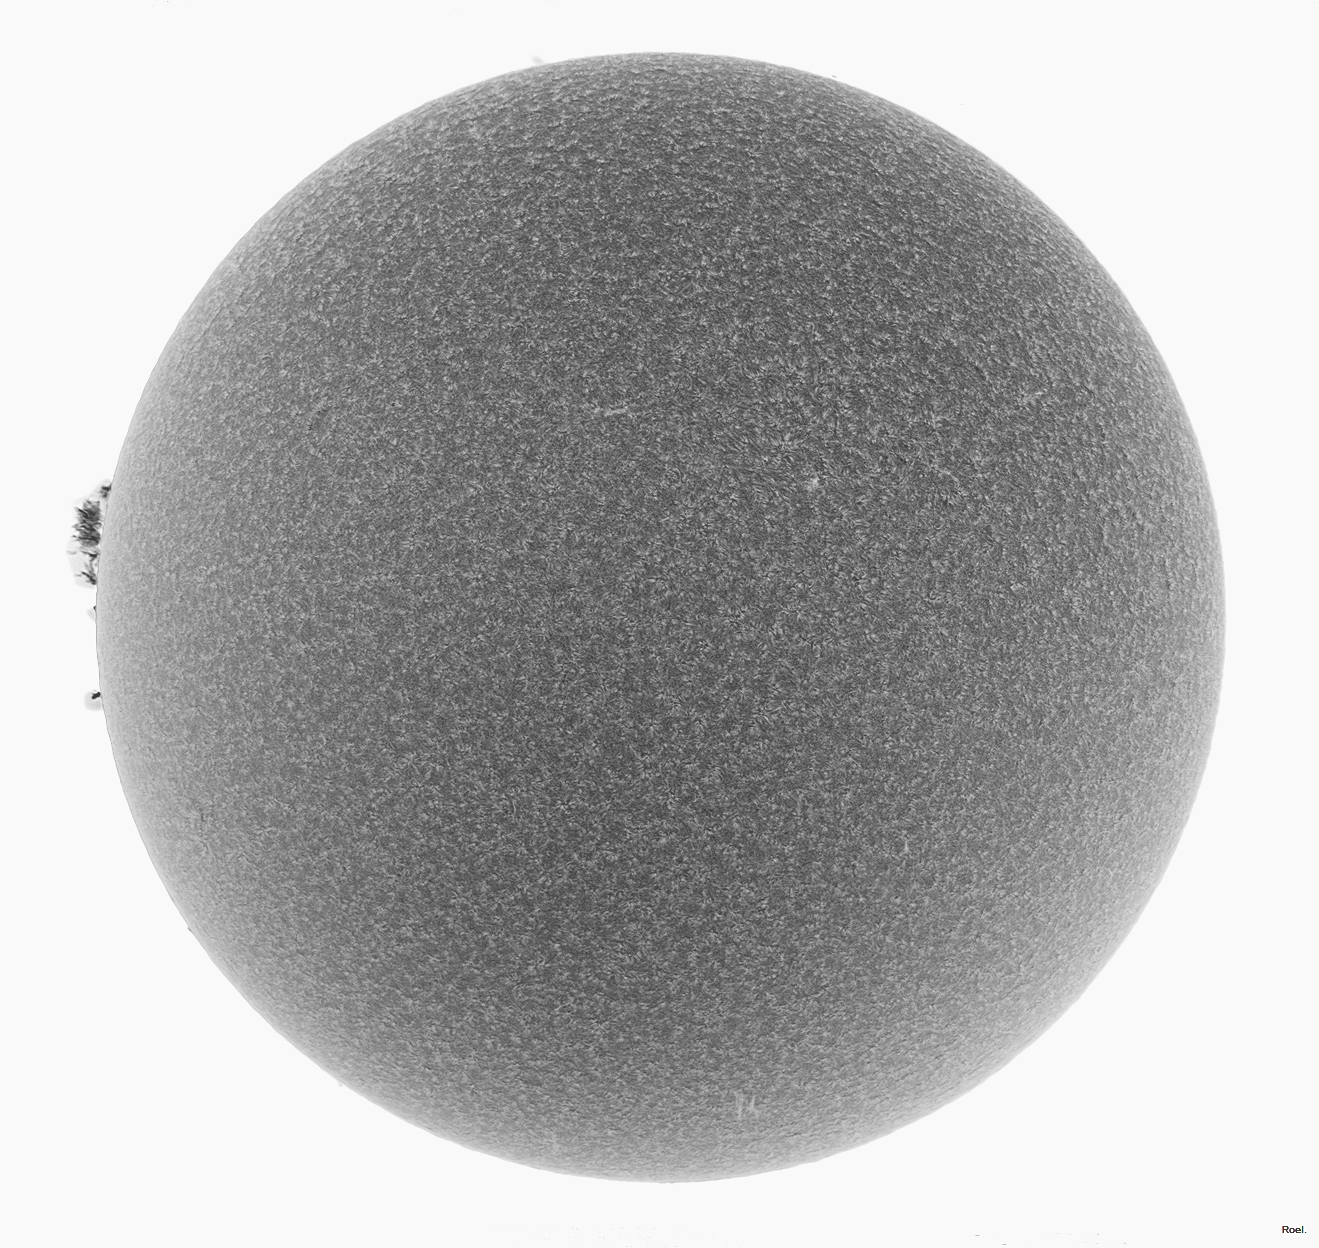 Sol del 31 de octubre del 2018-Solarmax 90-DS-BF30-1neg.jpg